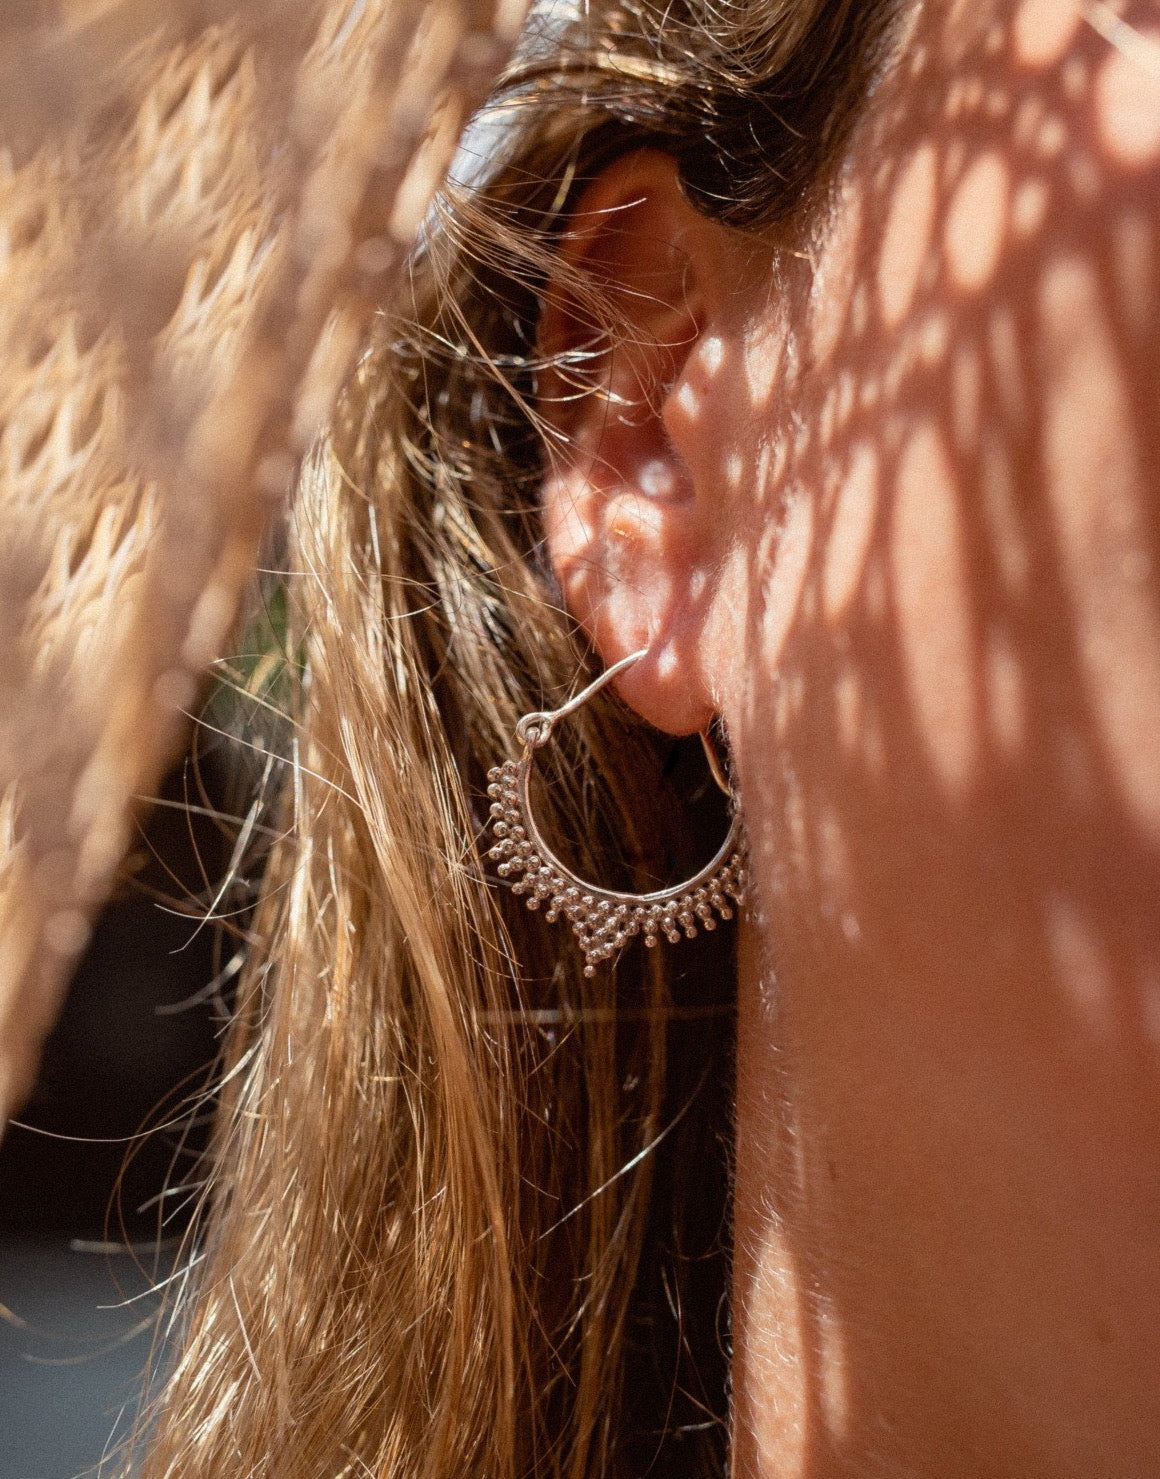 Echt Silber Ohrringe | Handgemacht auf Bali | Ohrringe silber hängend | Handgemachte Ohrringe silber creolen | Bali Schmuck online kaufen | Fair produzierter Schmuck aus Bali | Das perfekte Geschenk für Freundin finden bei VERLAN Jewellery 